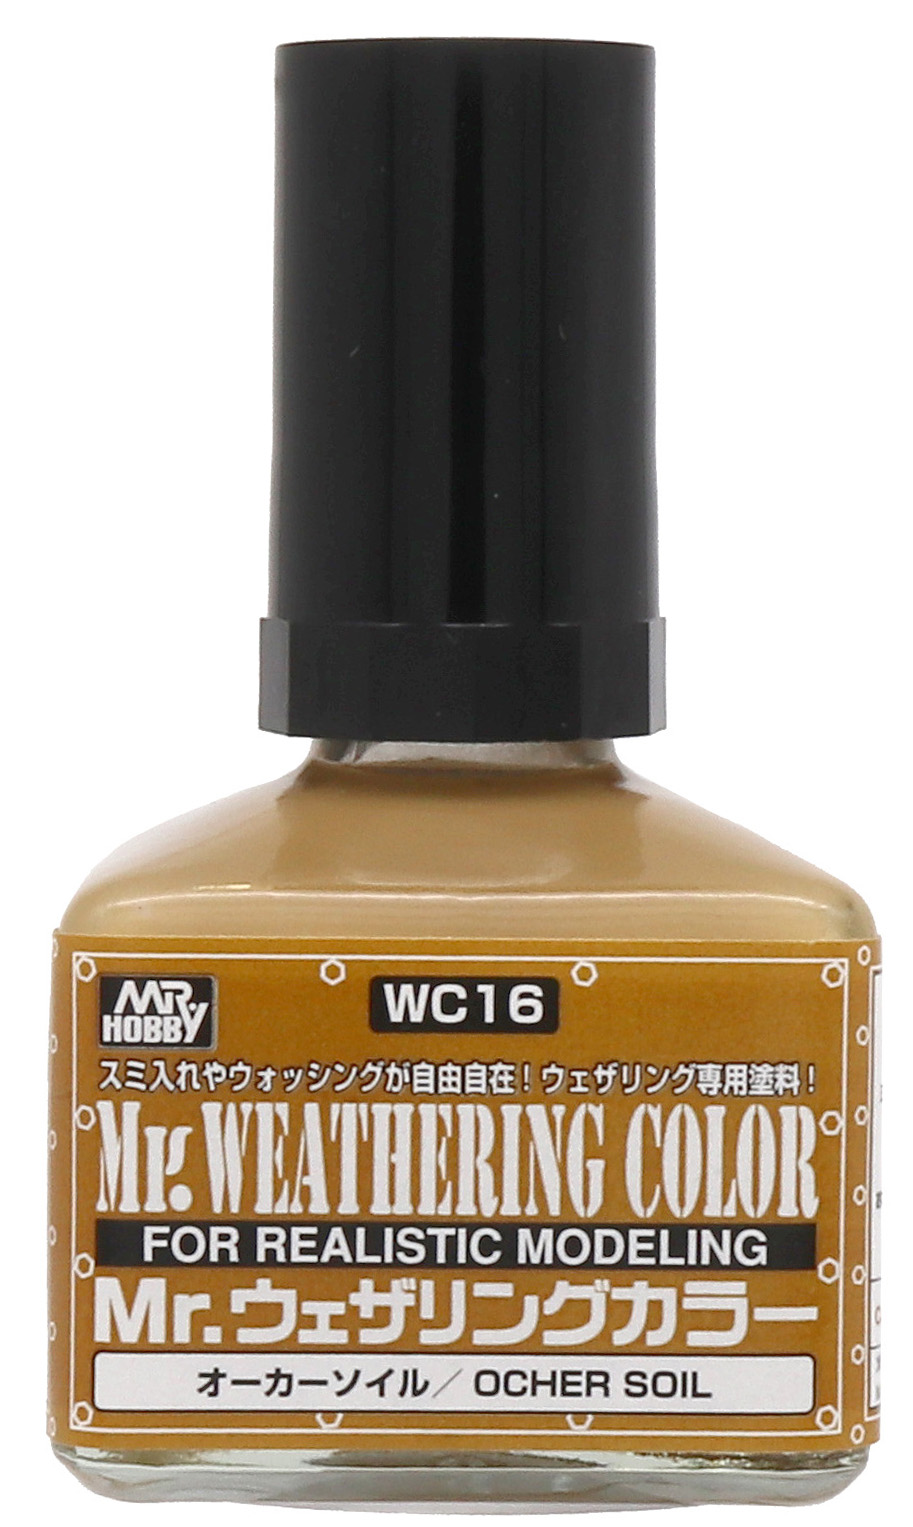 Mr.ウェザリングカラー | ウェザリング塗料 | 塗料・うすめ液 | GSI